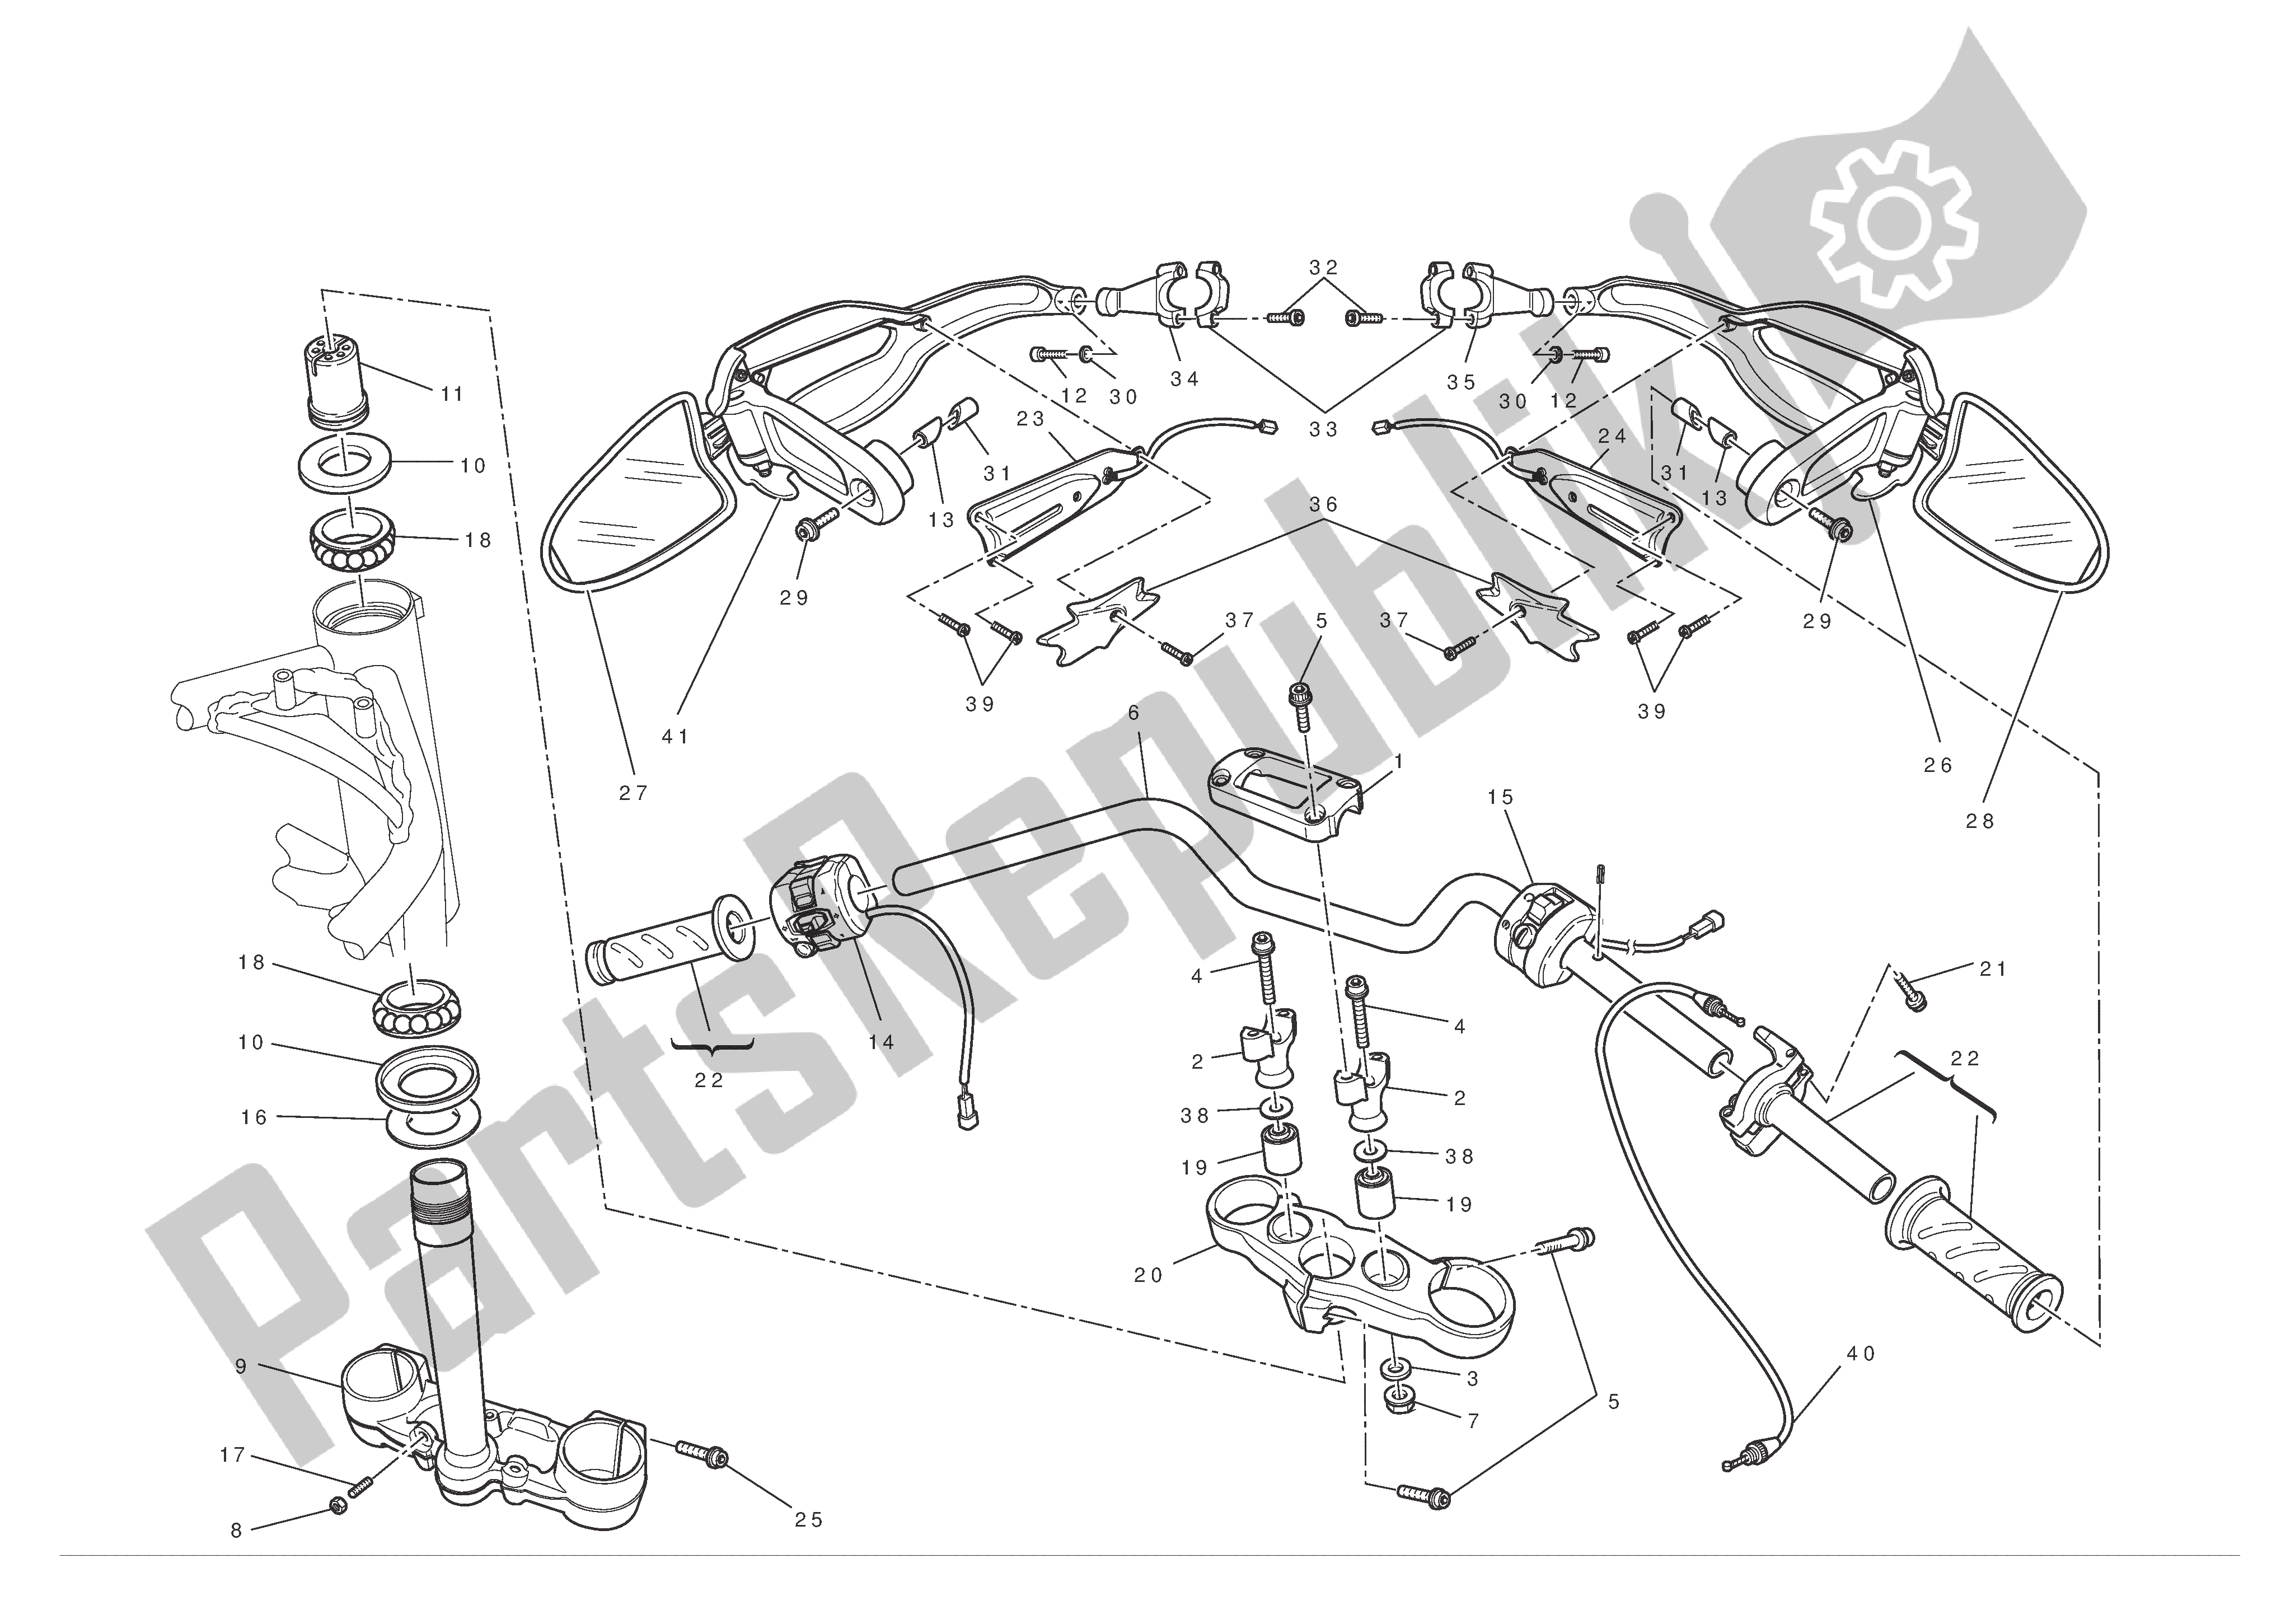 Todas las partes para Manillar Y Controles de Ducati Hypermotard 796 2012